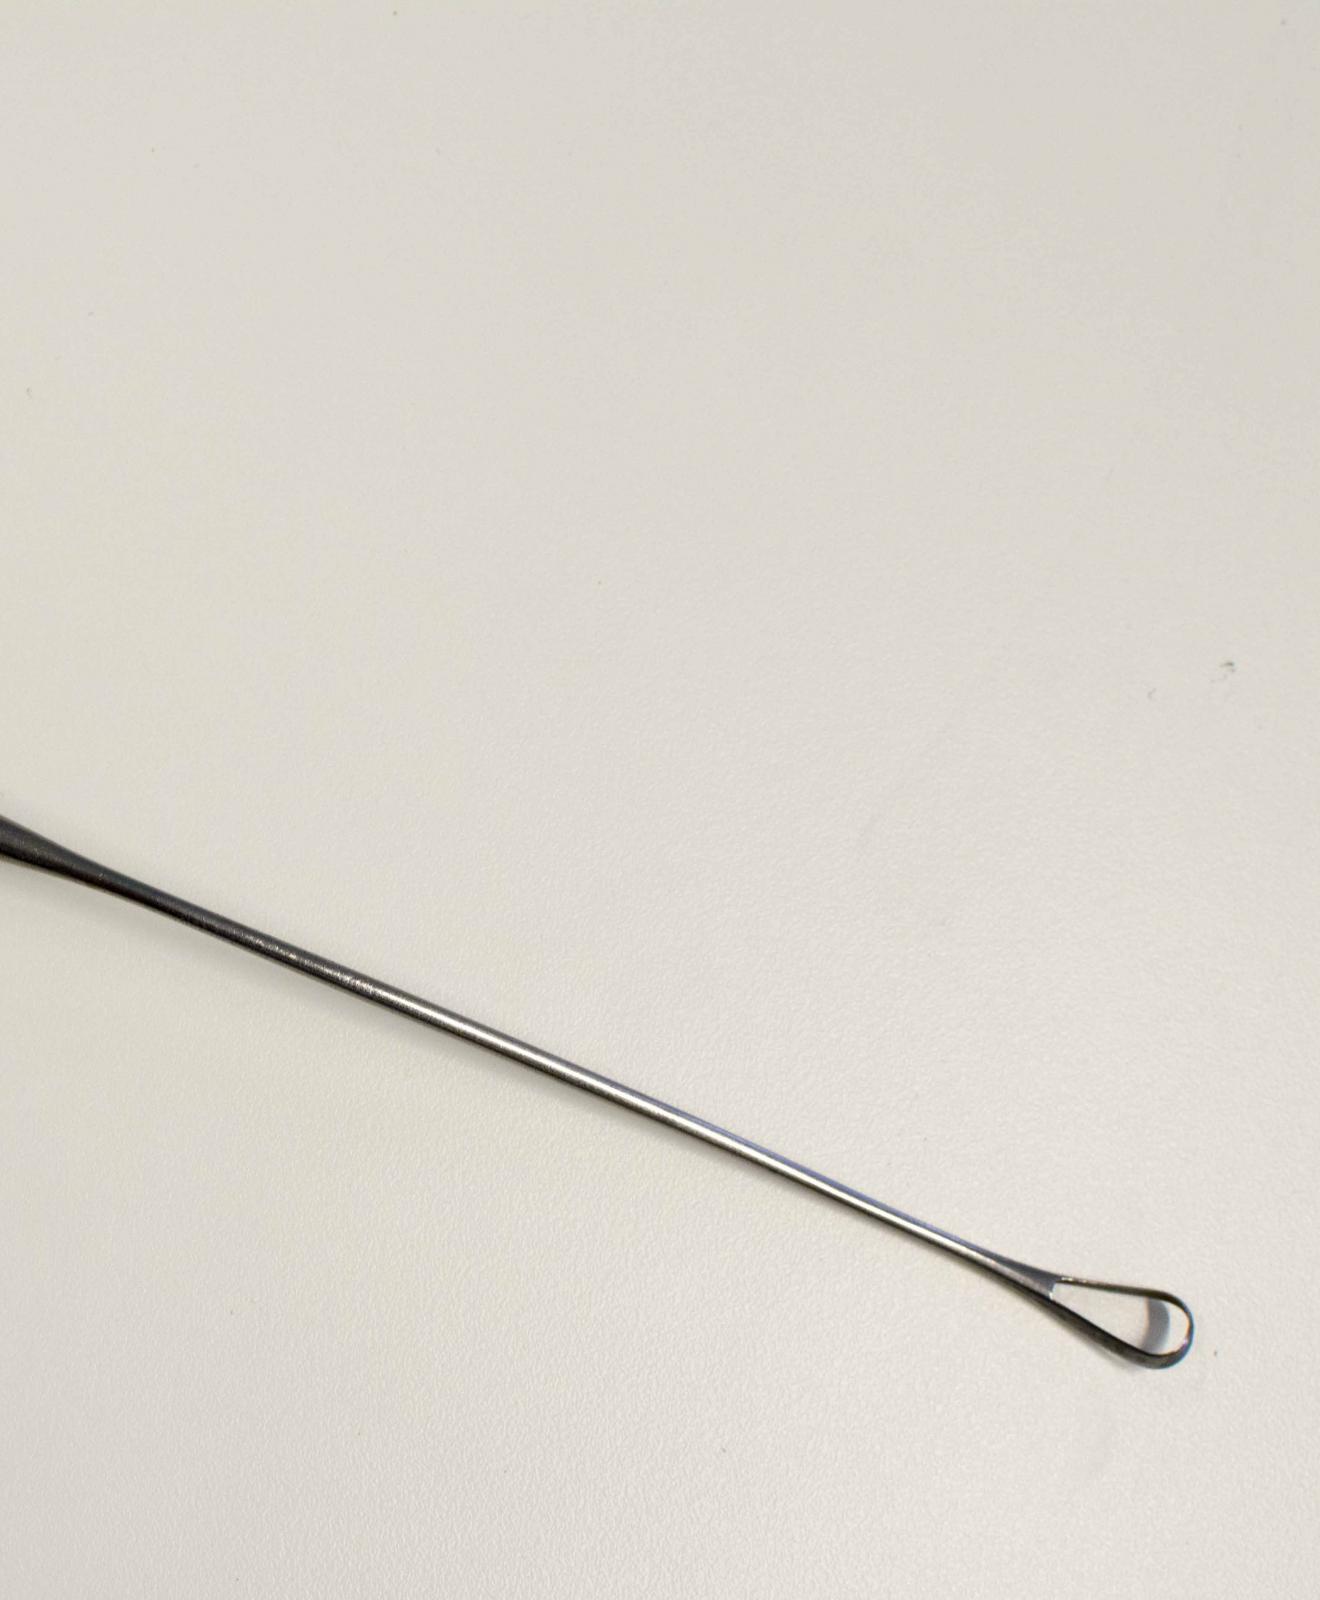 Instrumento metálico con forma de cuchara hueca